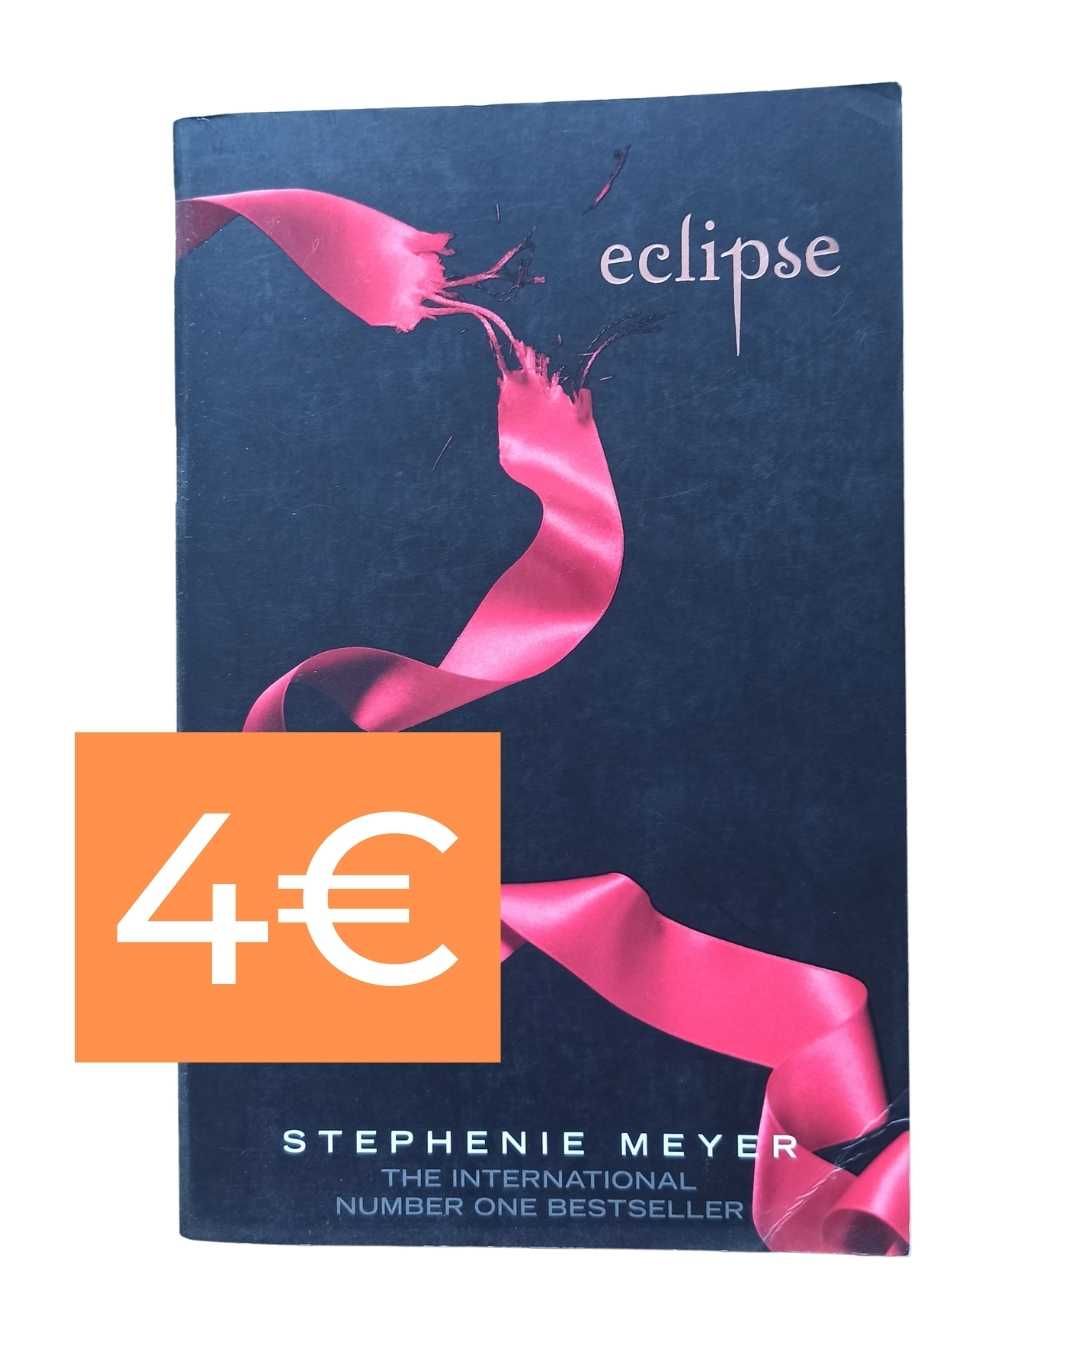 Livros Stephanie Meyer - Twilight Saga (vários livros nas imagens)